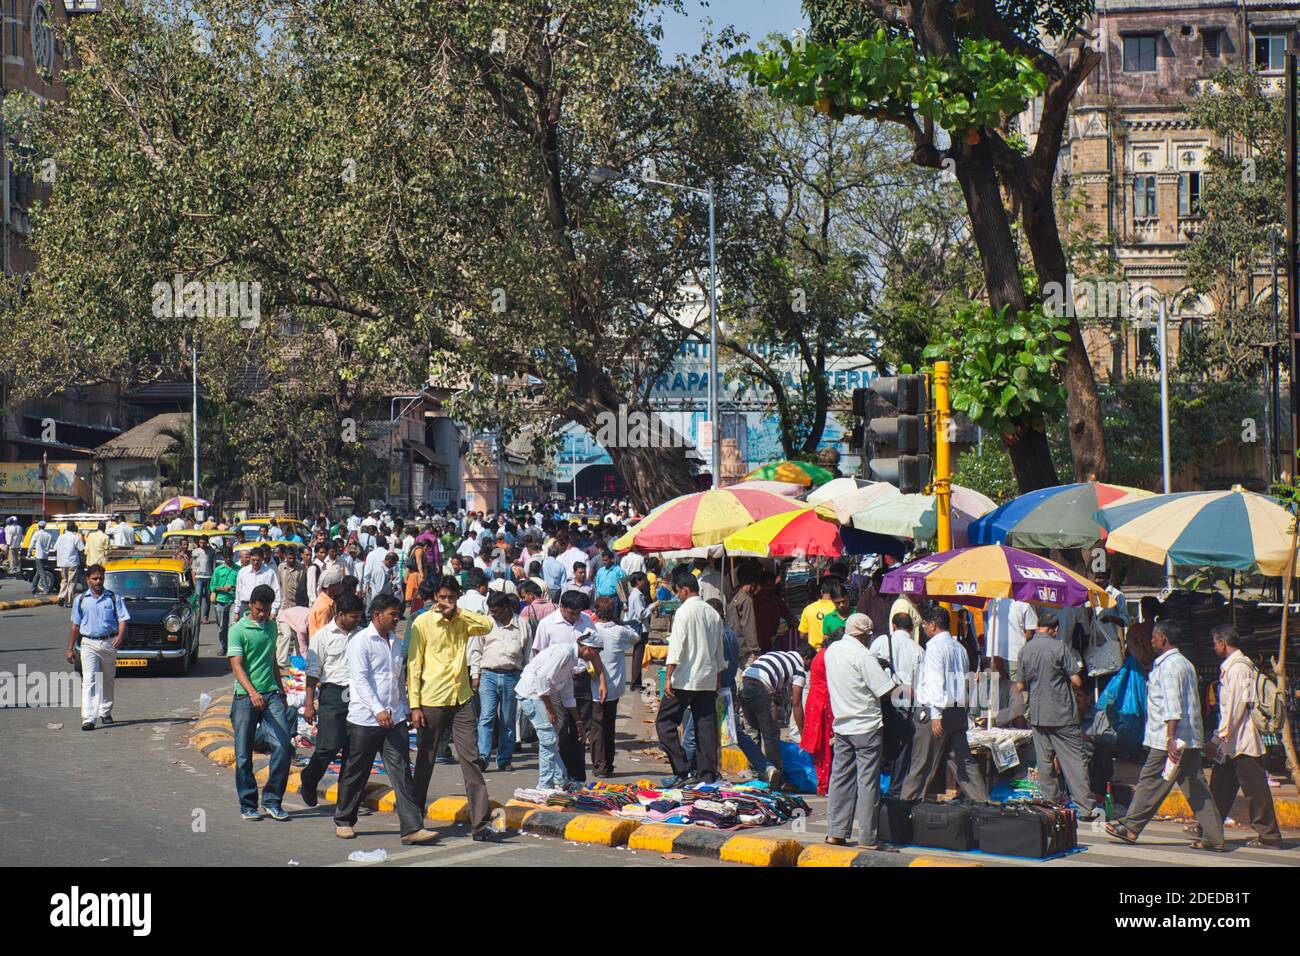 Une scène de rue colorée à Mumbai Inde avec des étals de marché et de grandes foules de personnes plus des brelles de soleil colorées et arbres Banque D'Images